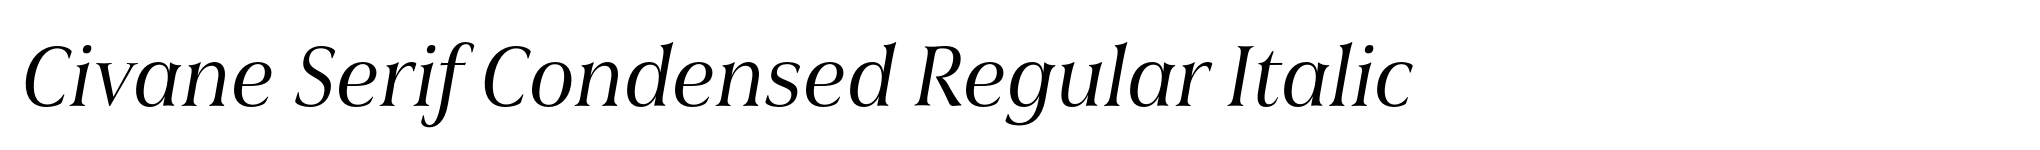 Civane Serif Condensed Regular Italic image